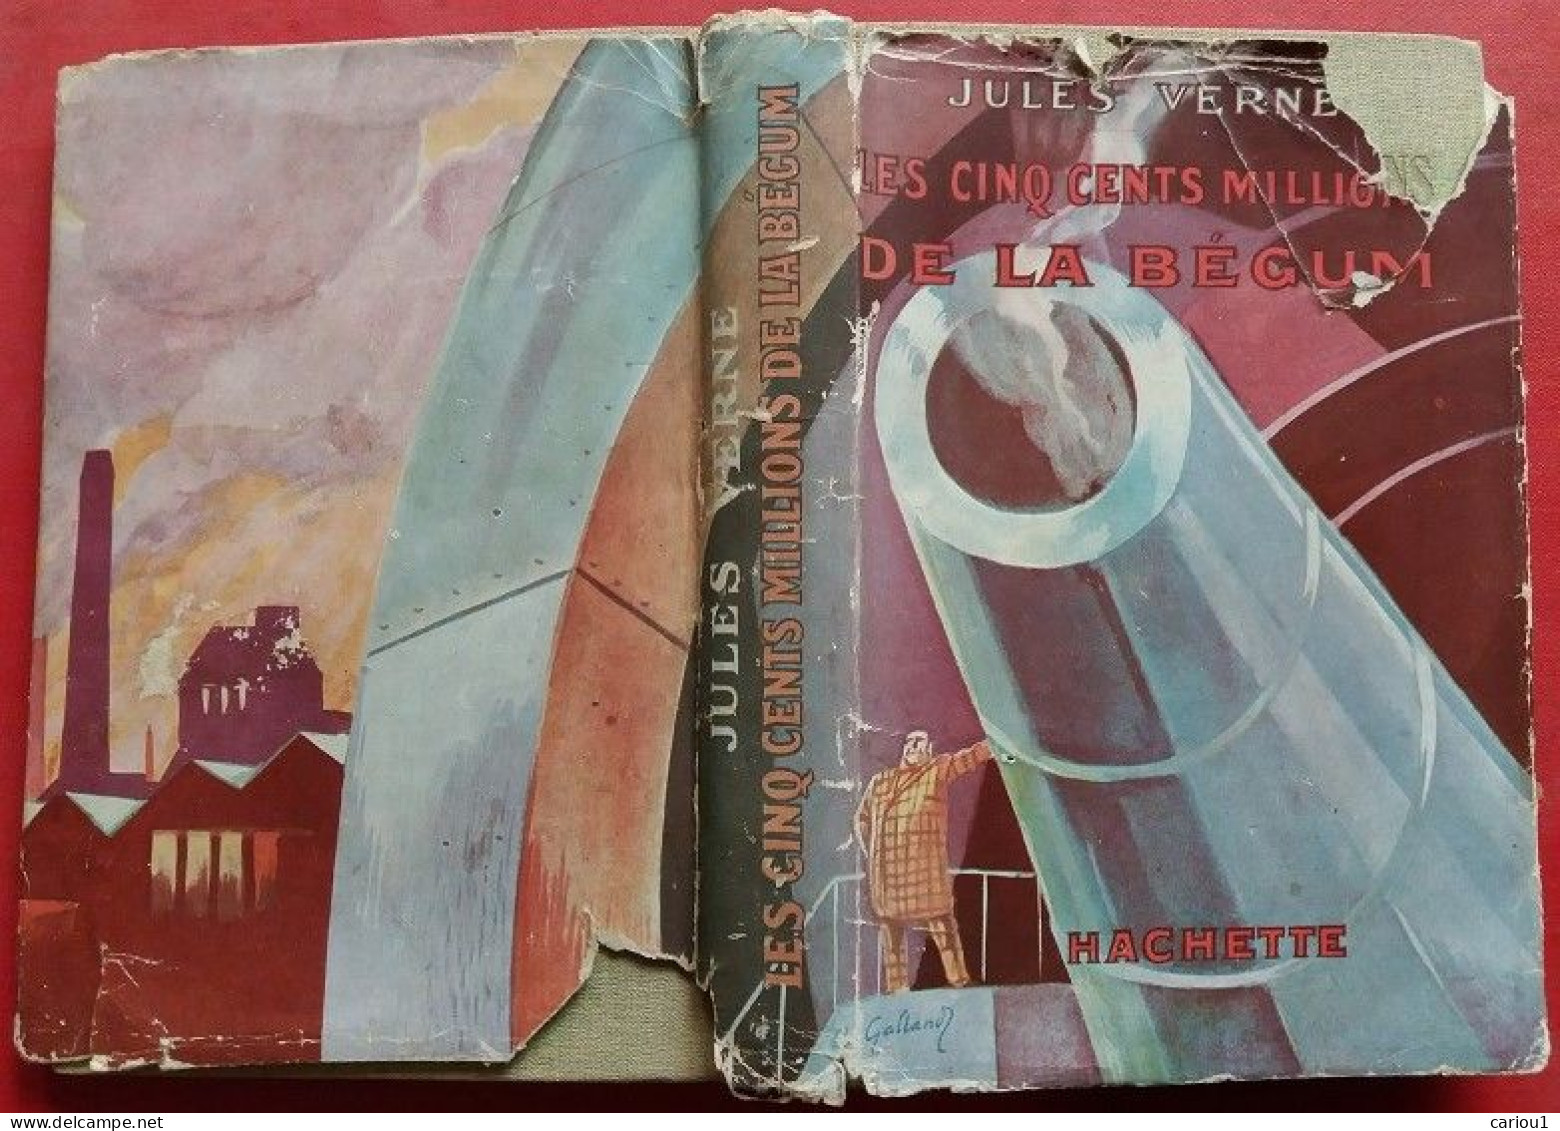 C1 Jules VERNE Les CINQ CENT MILLIONS DE LA BEGUM Jaquette ILLUSTRE GALLAND 1929  PORT INCLUS France - Bibliotheque De La Jeunesse